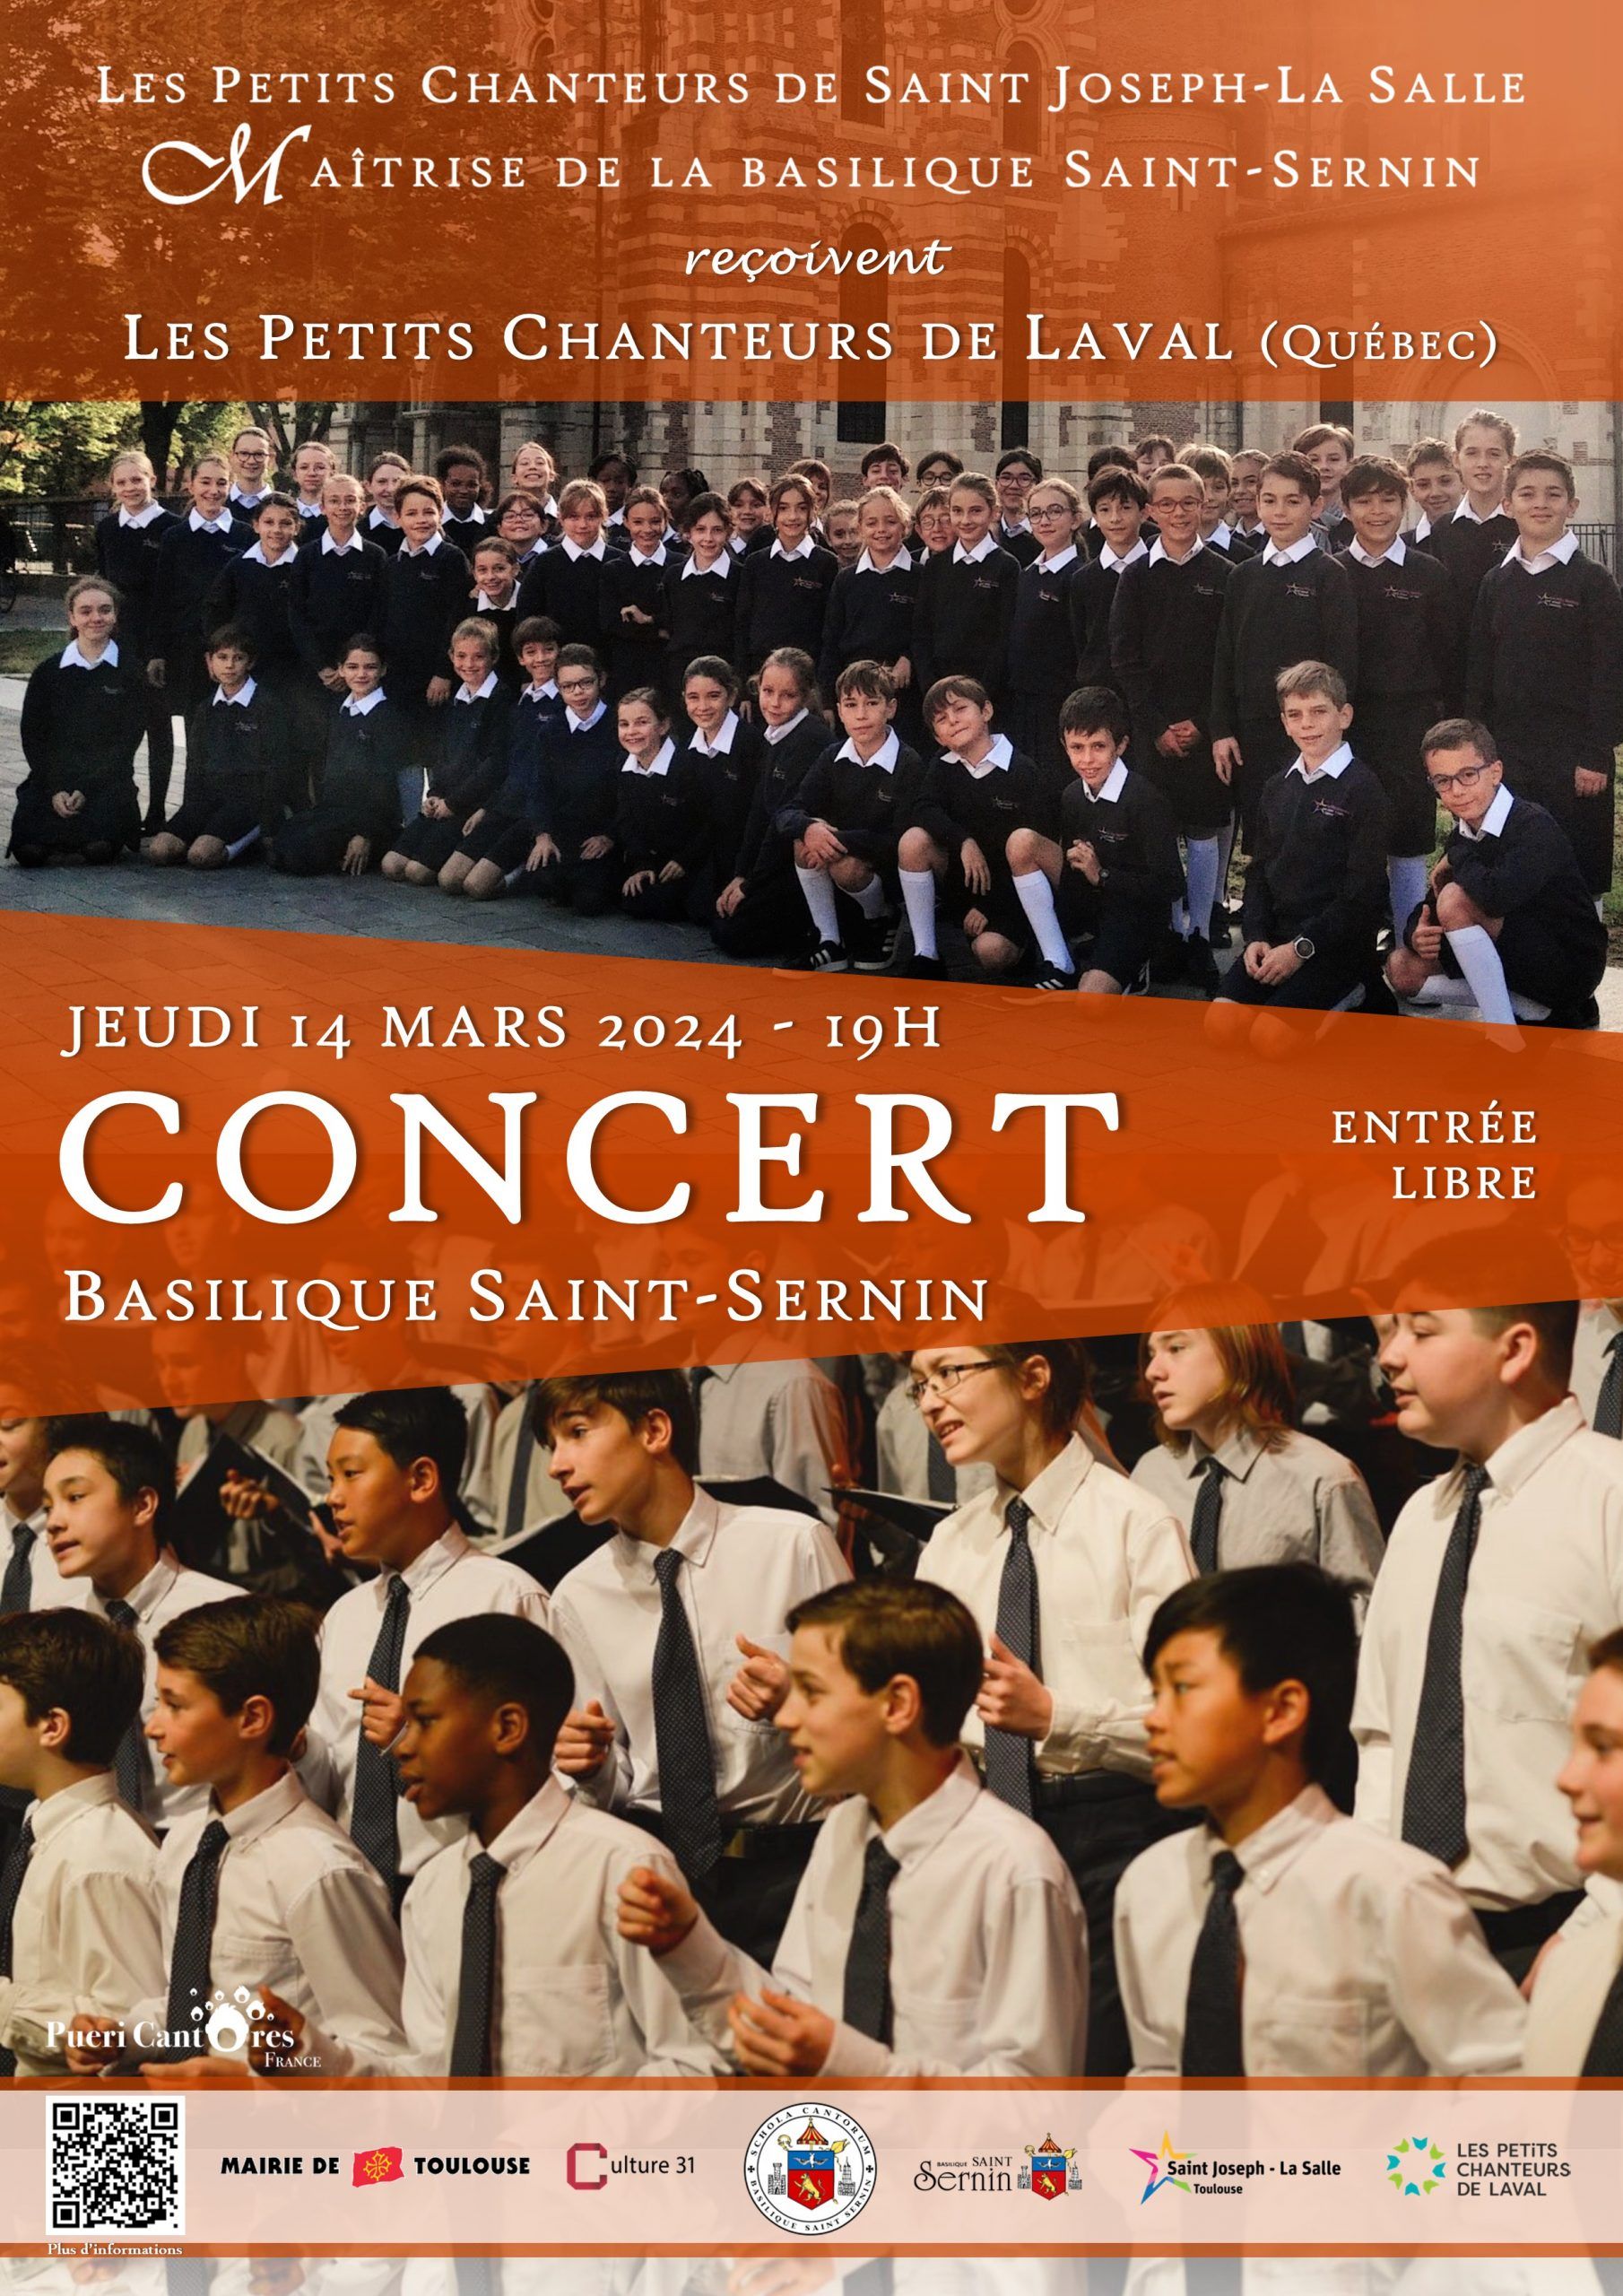 Schola Cantorum de la basilique Saint-Sernin - Concert du 14 mars